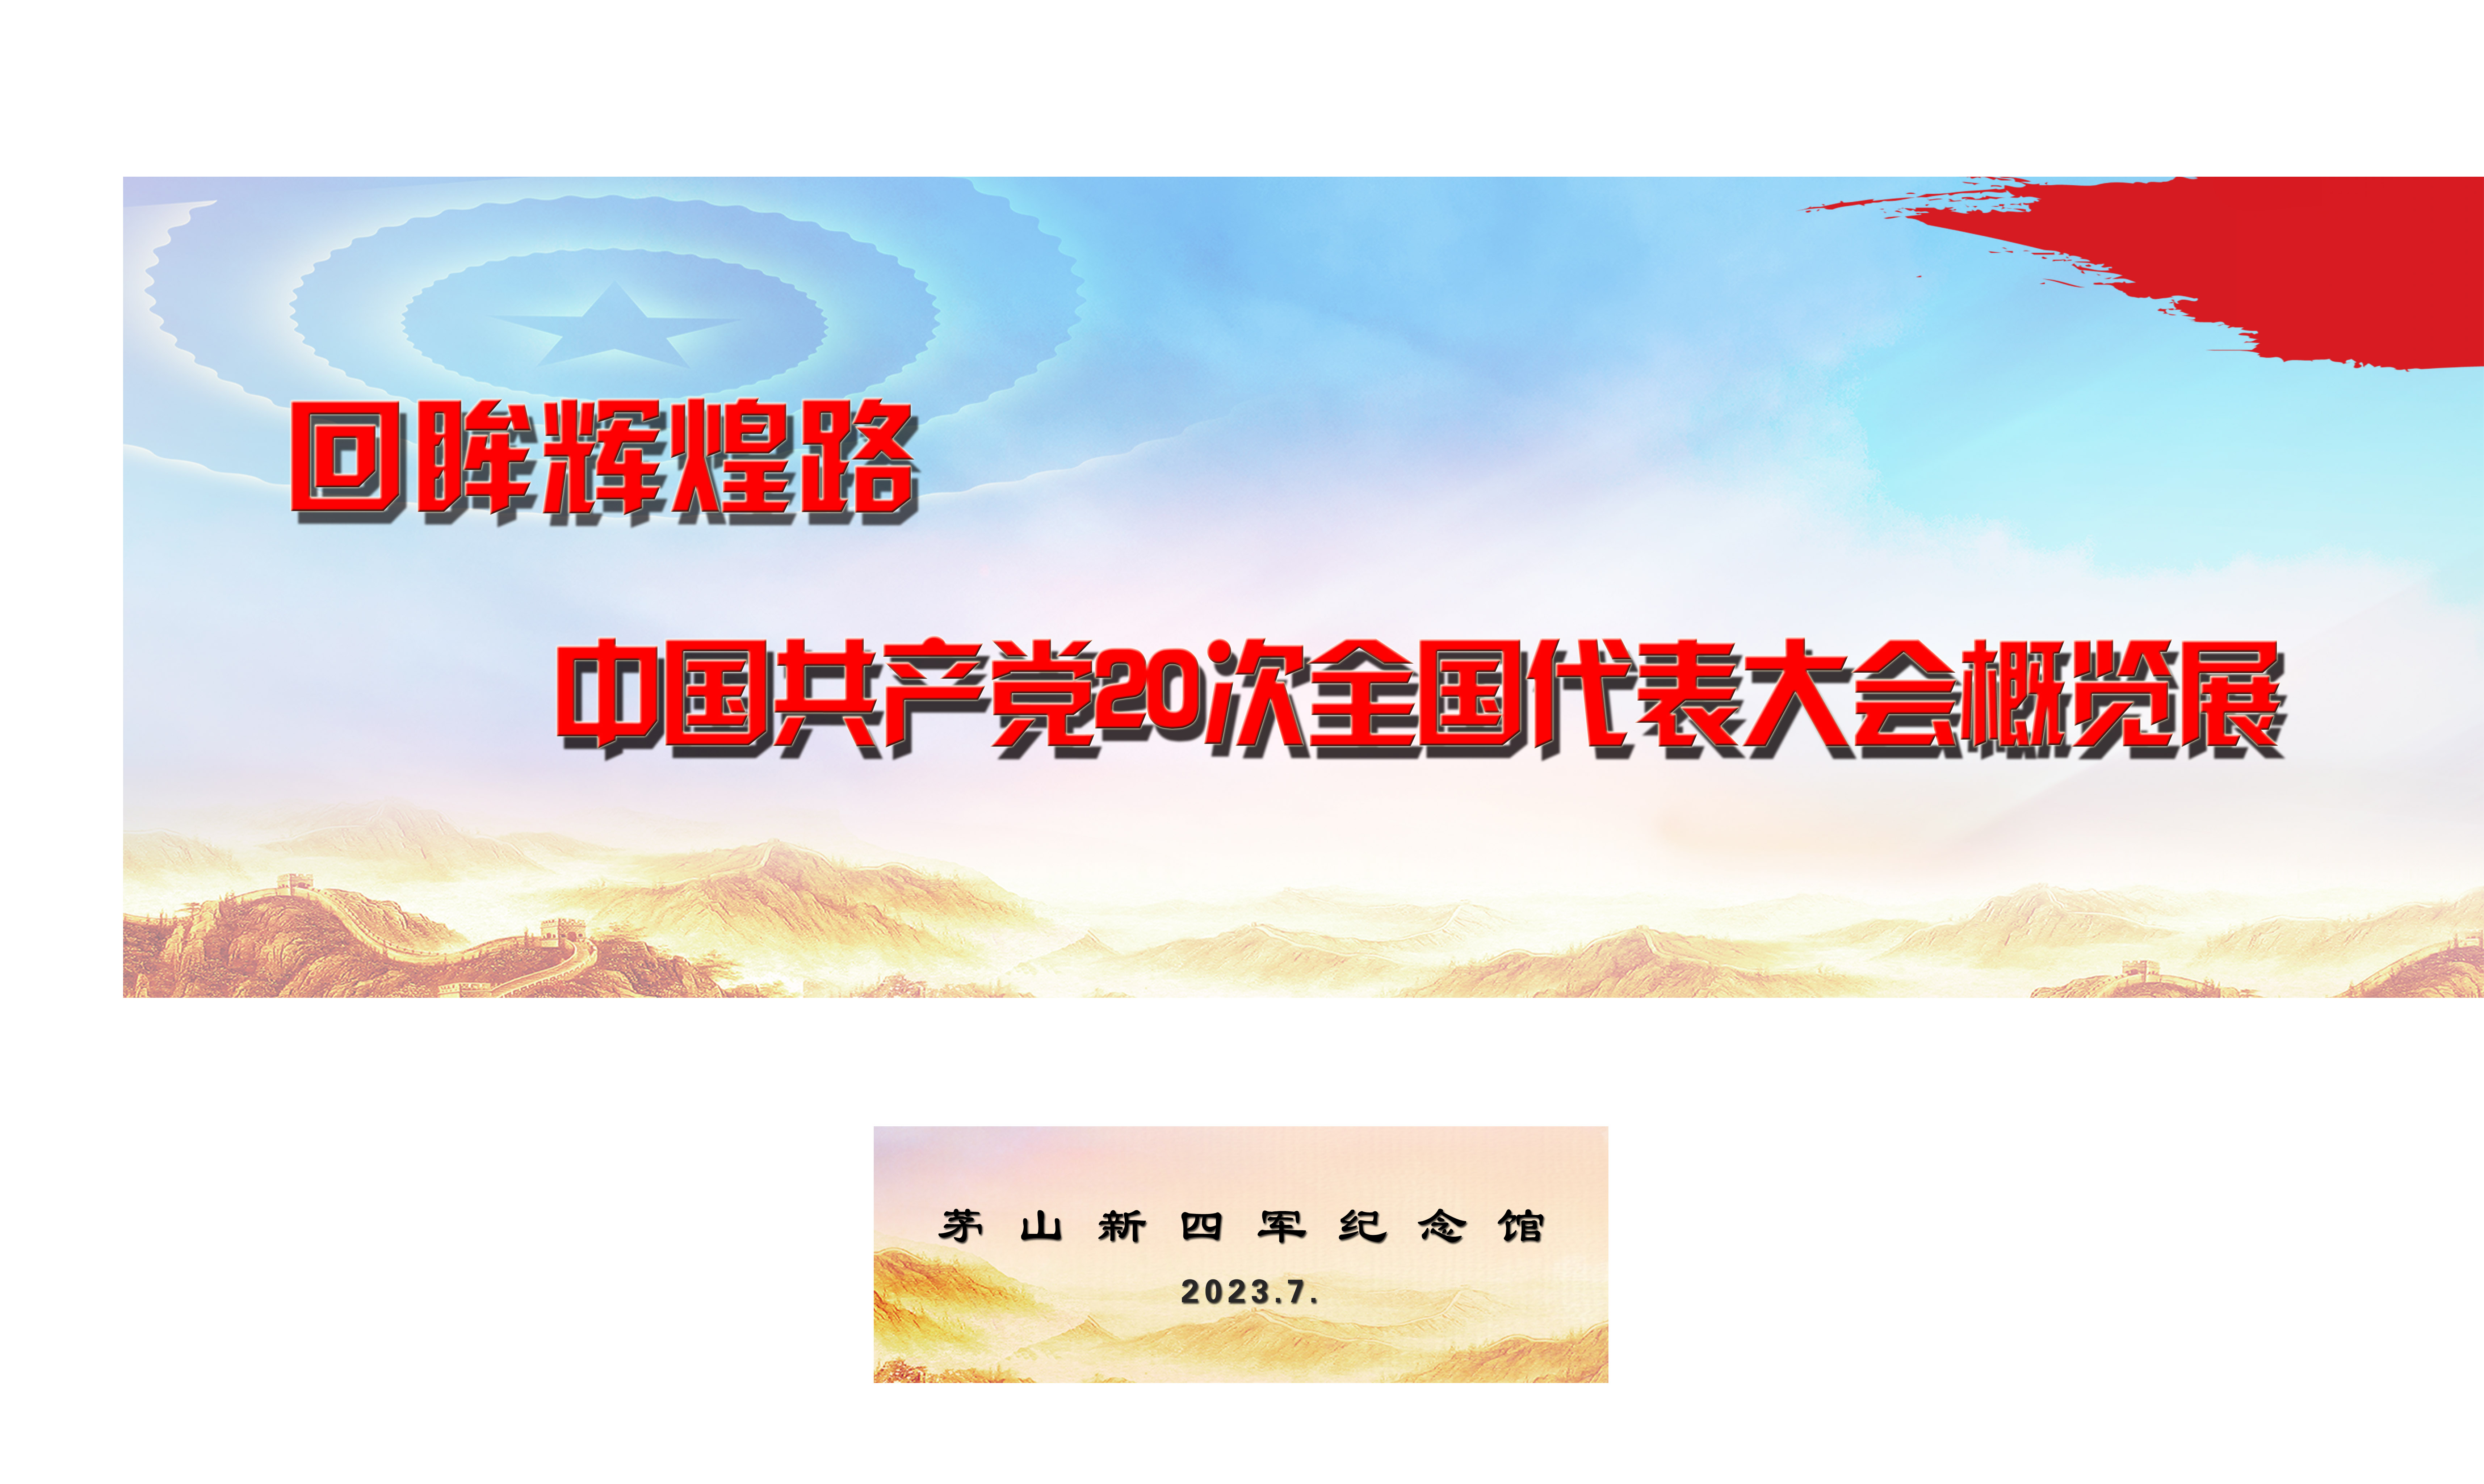 回眸辉煌路—中国共产党20次全国代表大会概览展